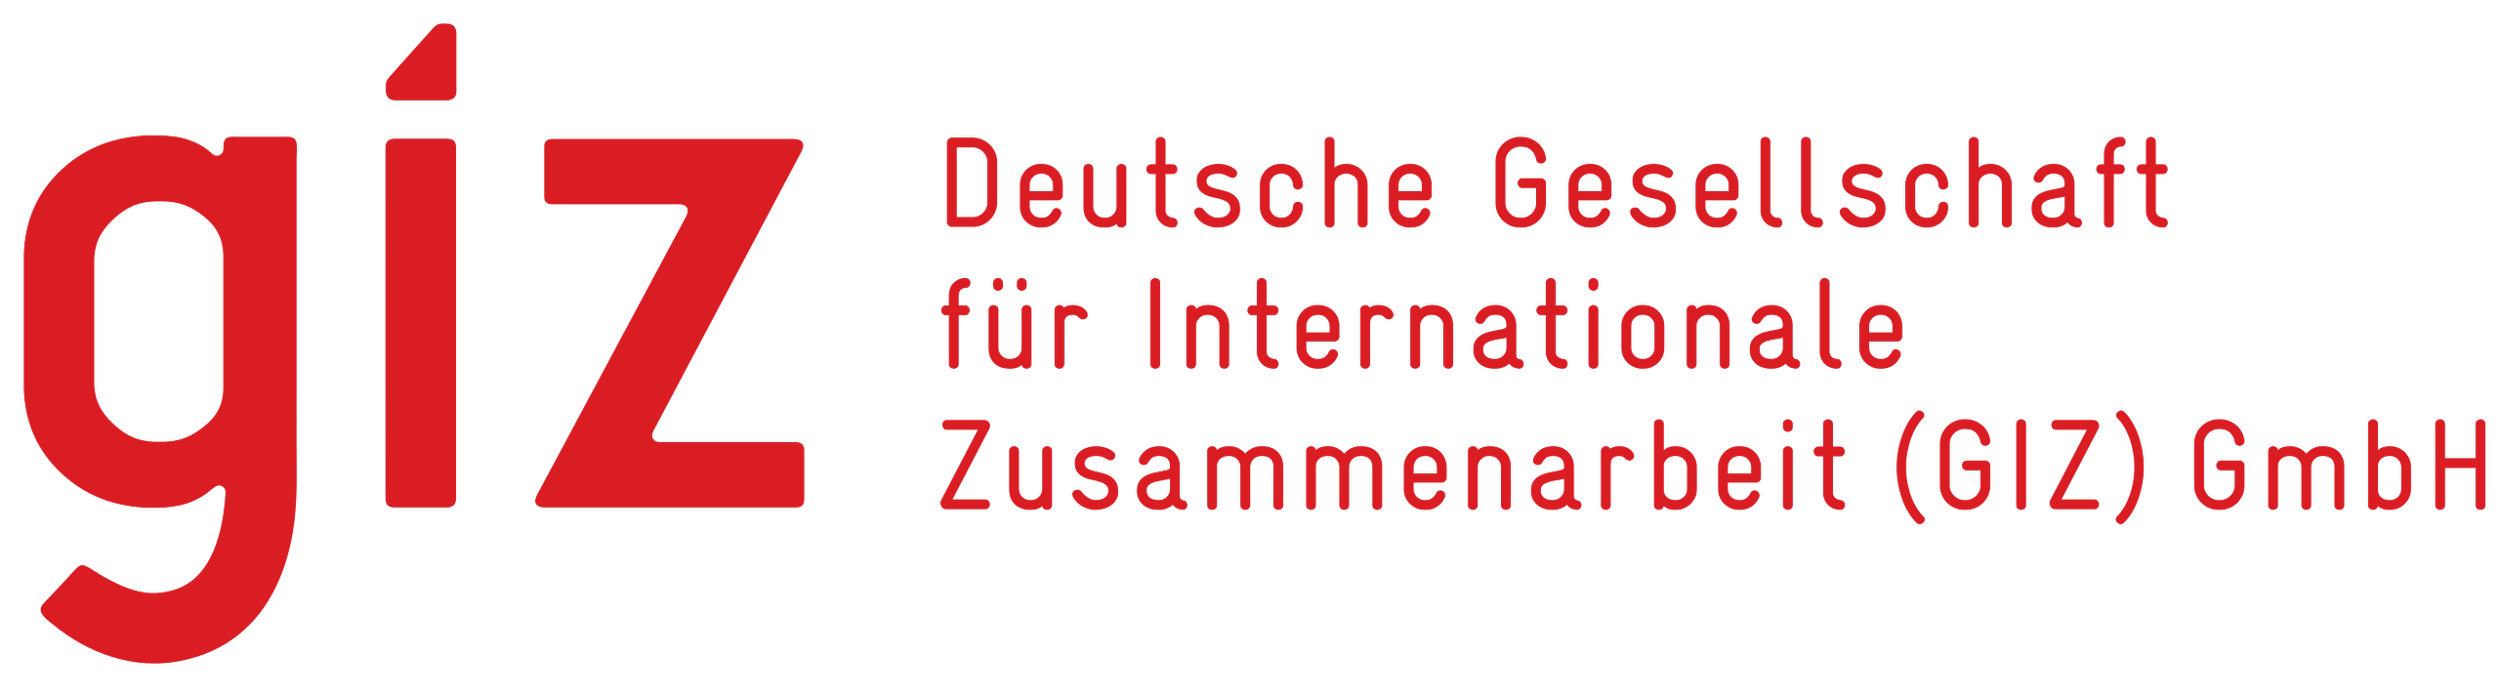 Deutsche_Gesellschaft_für_Internationale_Zusammenarbeit_Logo.svg.png